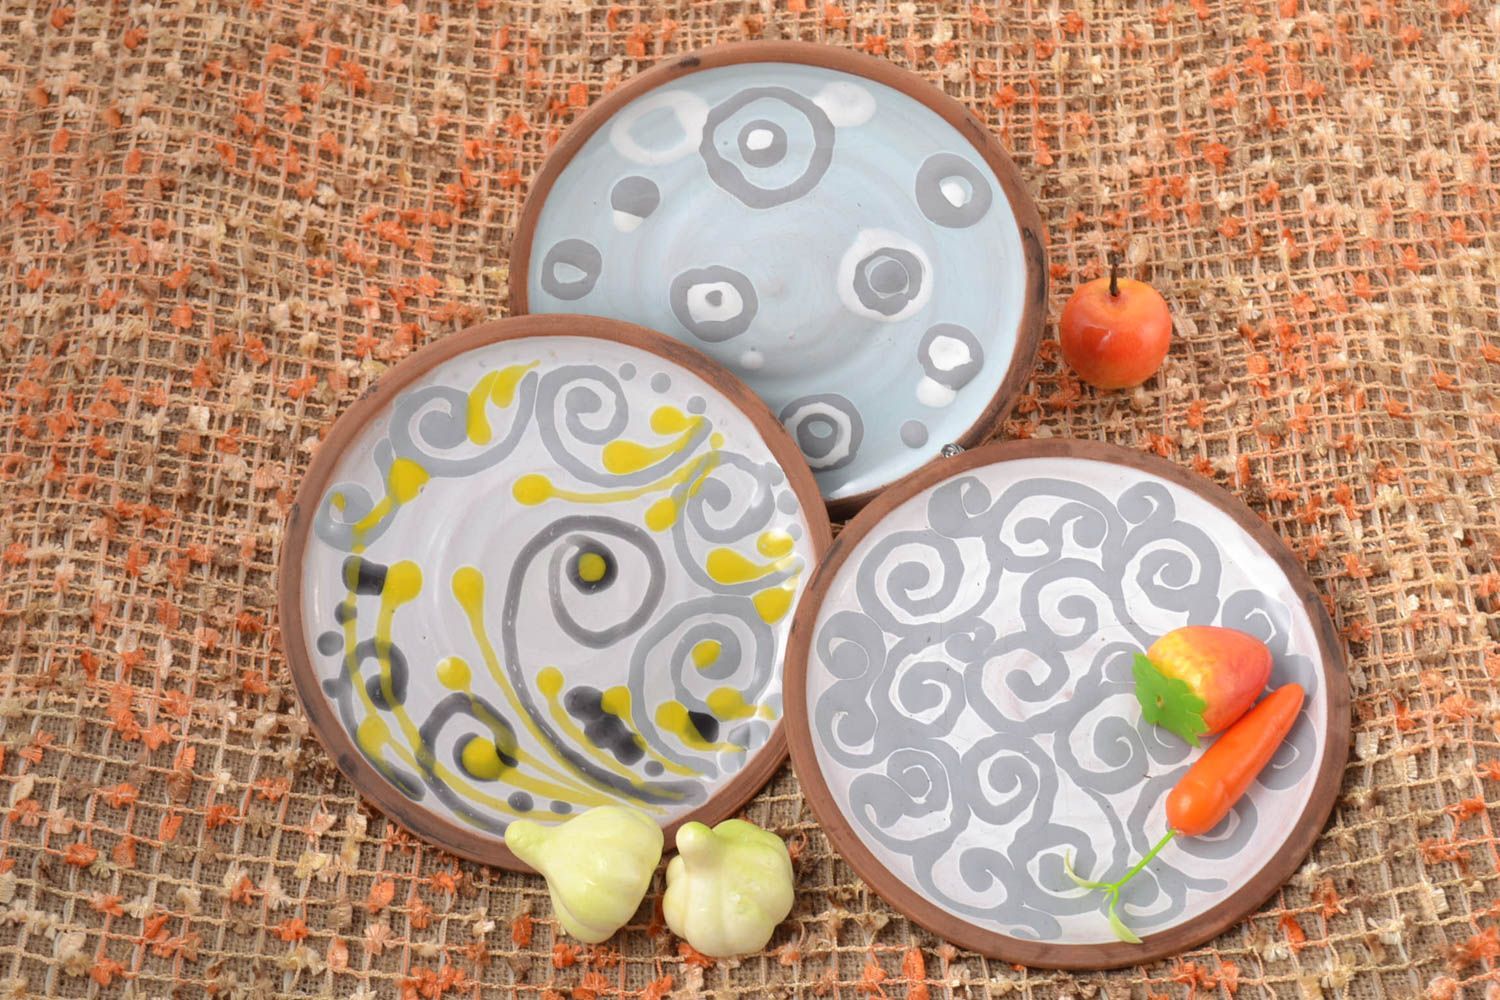 Handmade ceramic plate 3 pieces ceramic kitchenware kitchen supplies gift ideas photo 1